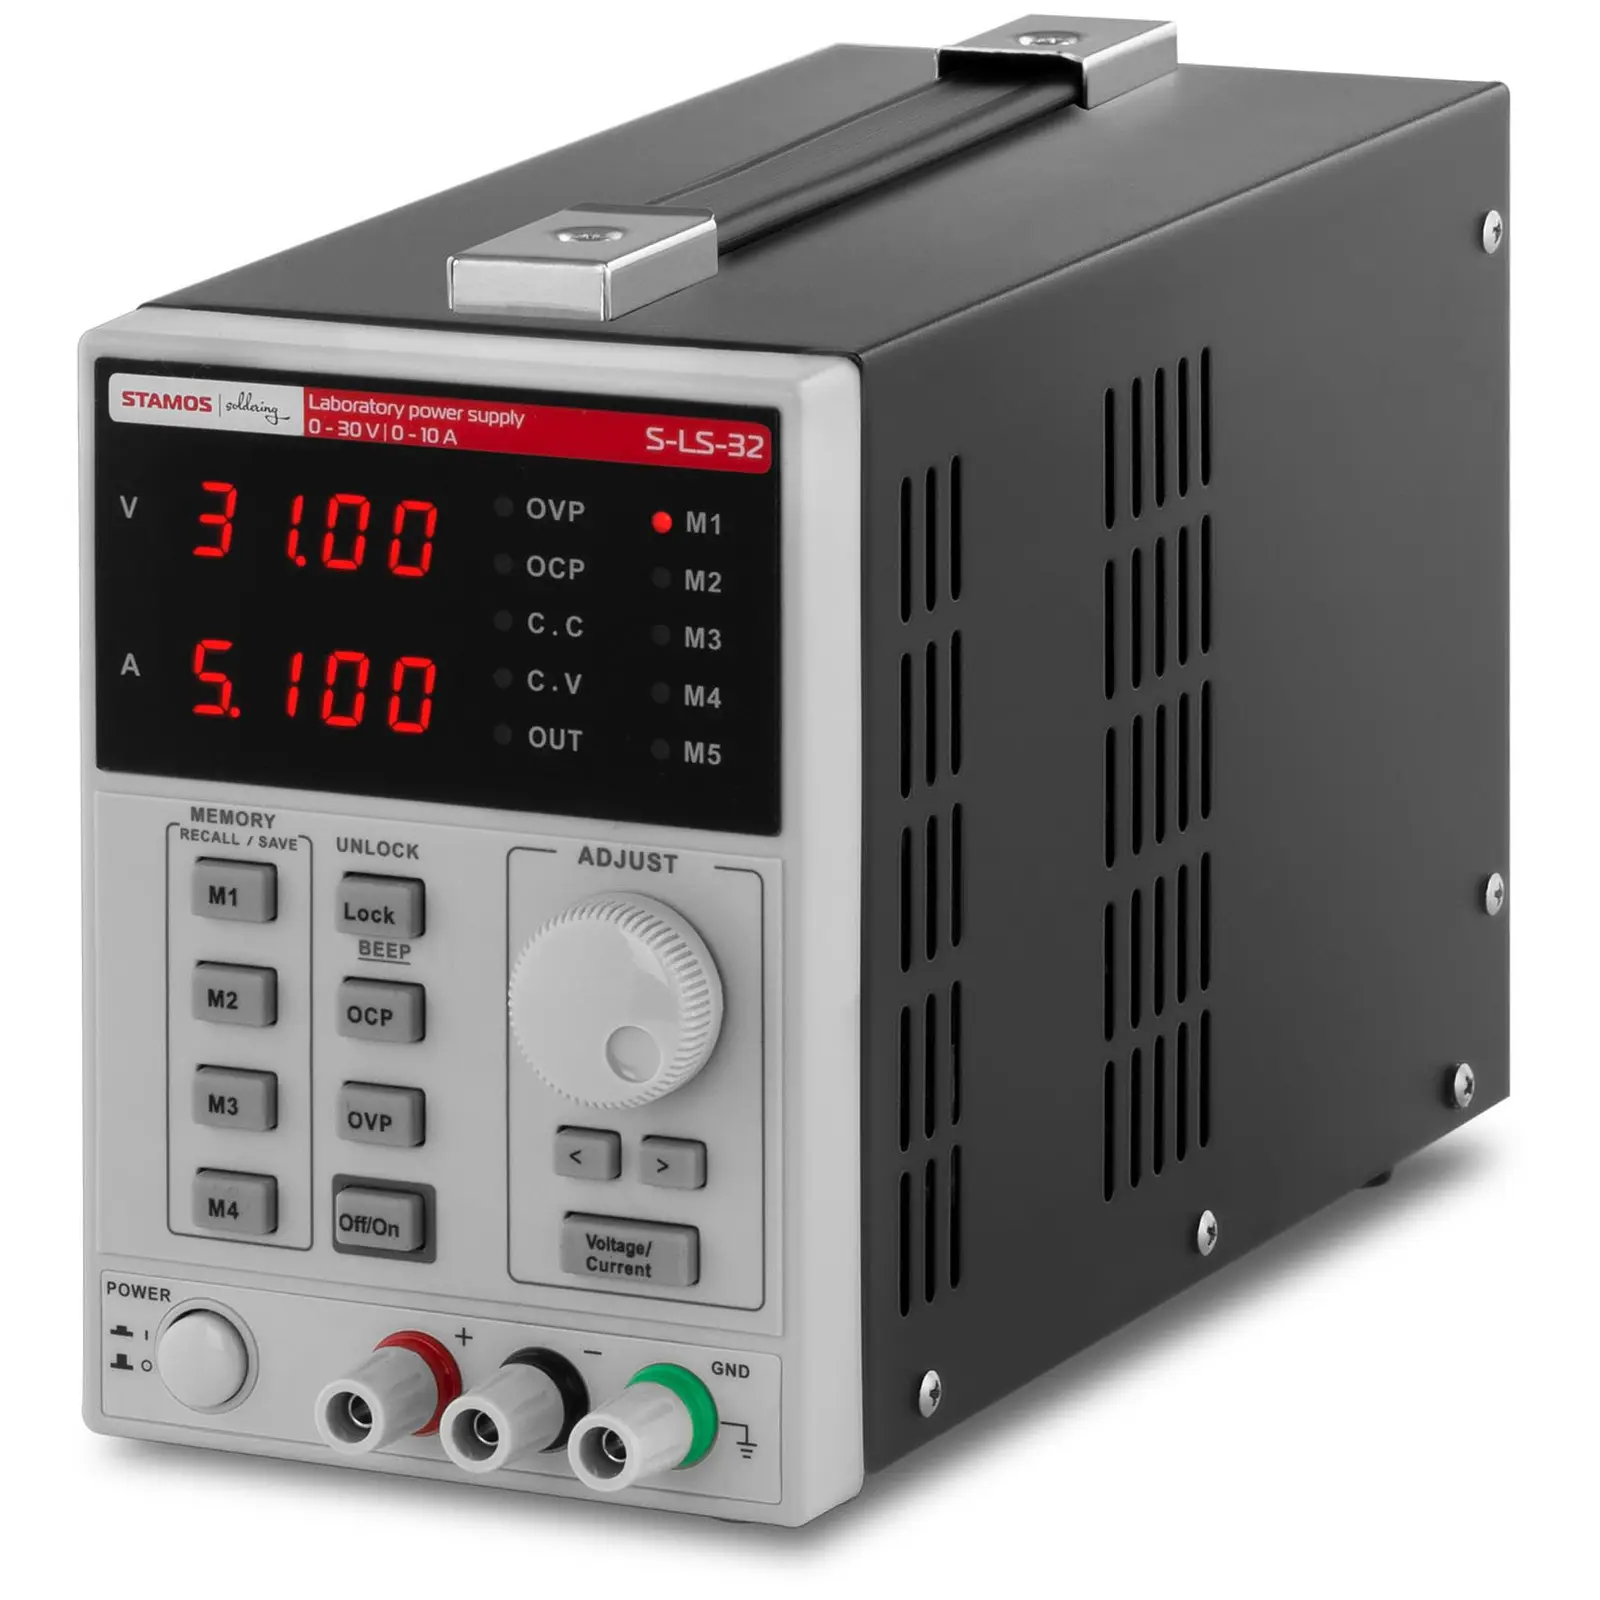 Fuente de alimentación para laboratorio - 0-30 V, 0-10 A DC, 300 W - 4 posiciones de memoria